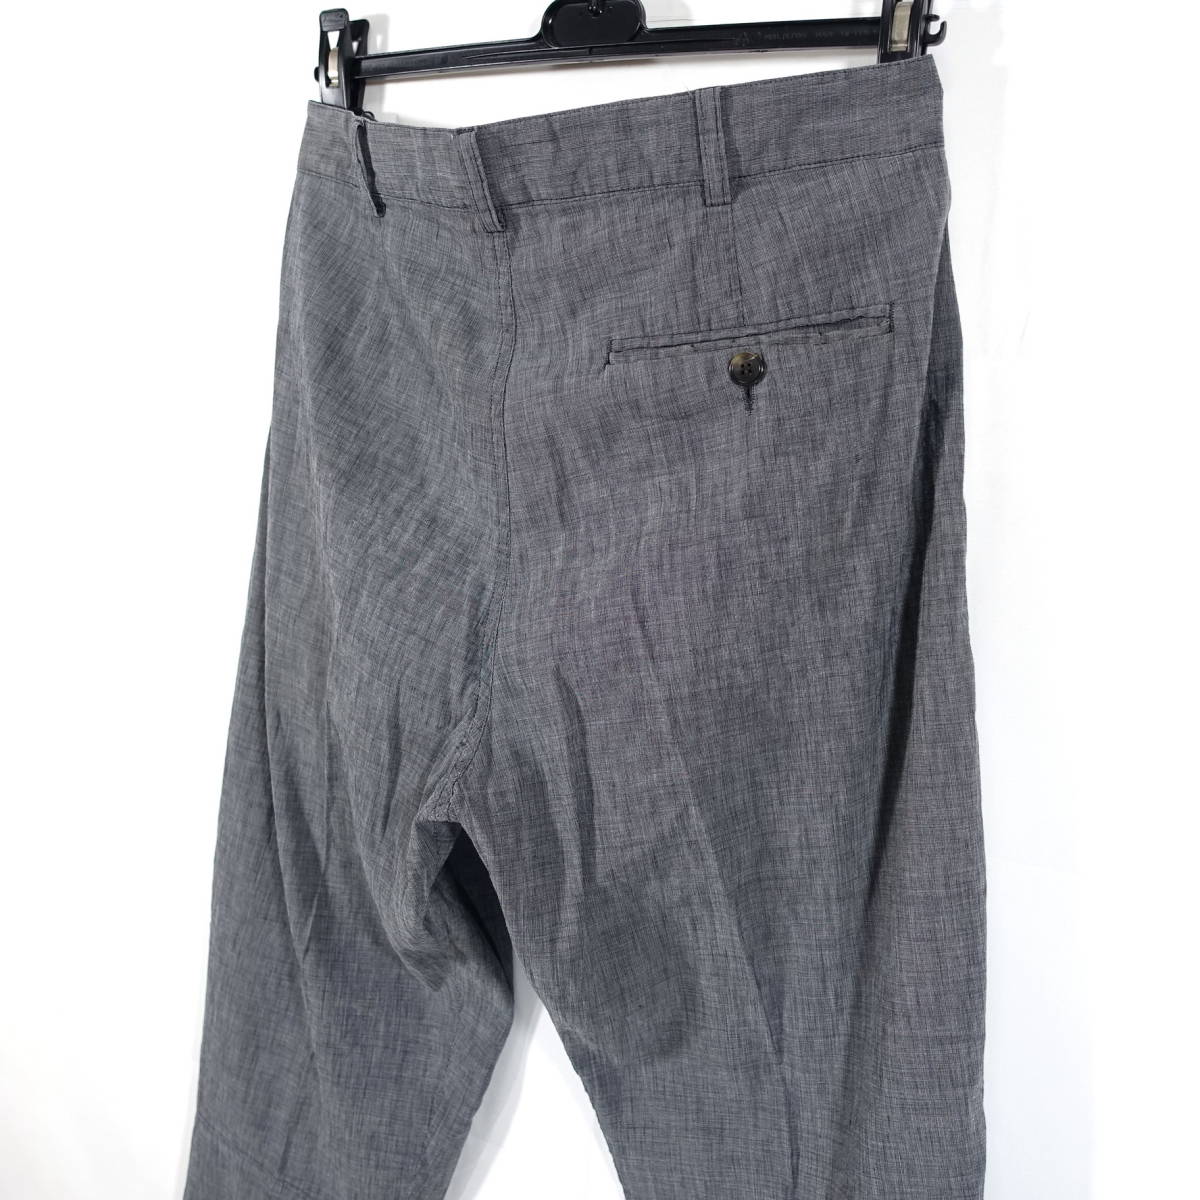 [ хорошая вещь ] Dries Van Noten весна лето linen хлопок конические брюки DRIES VAN NOTEN размер 48(L соответствует ) серый 